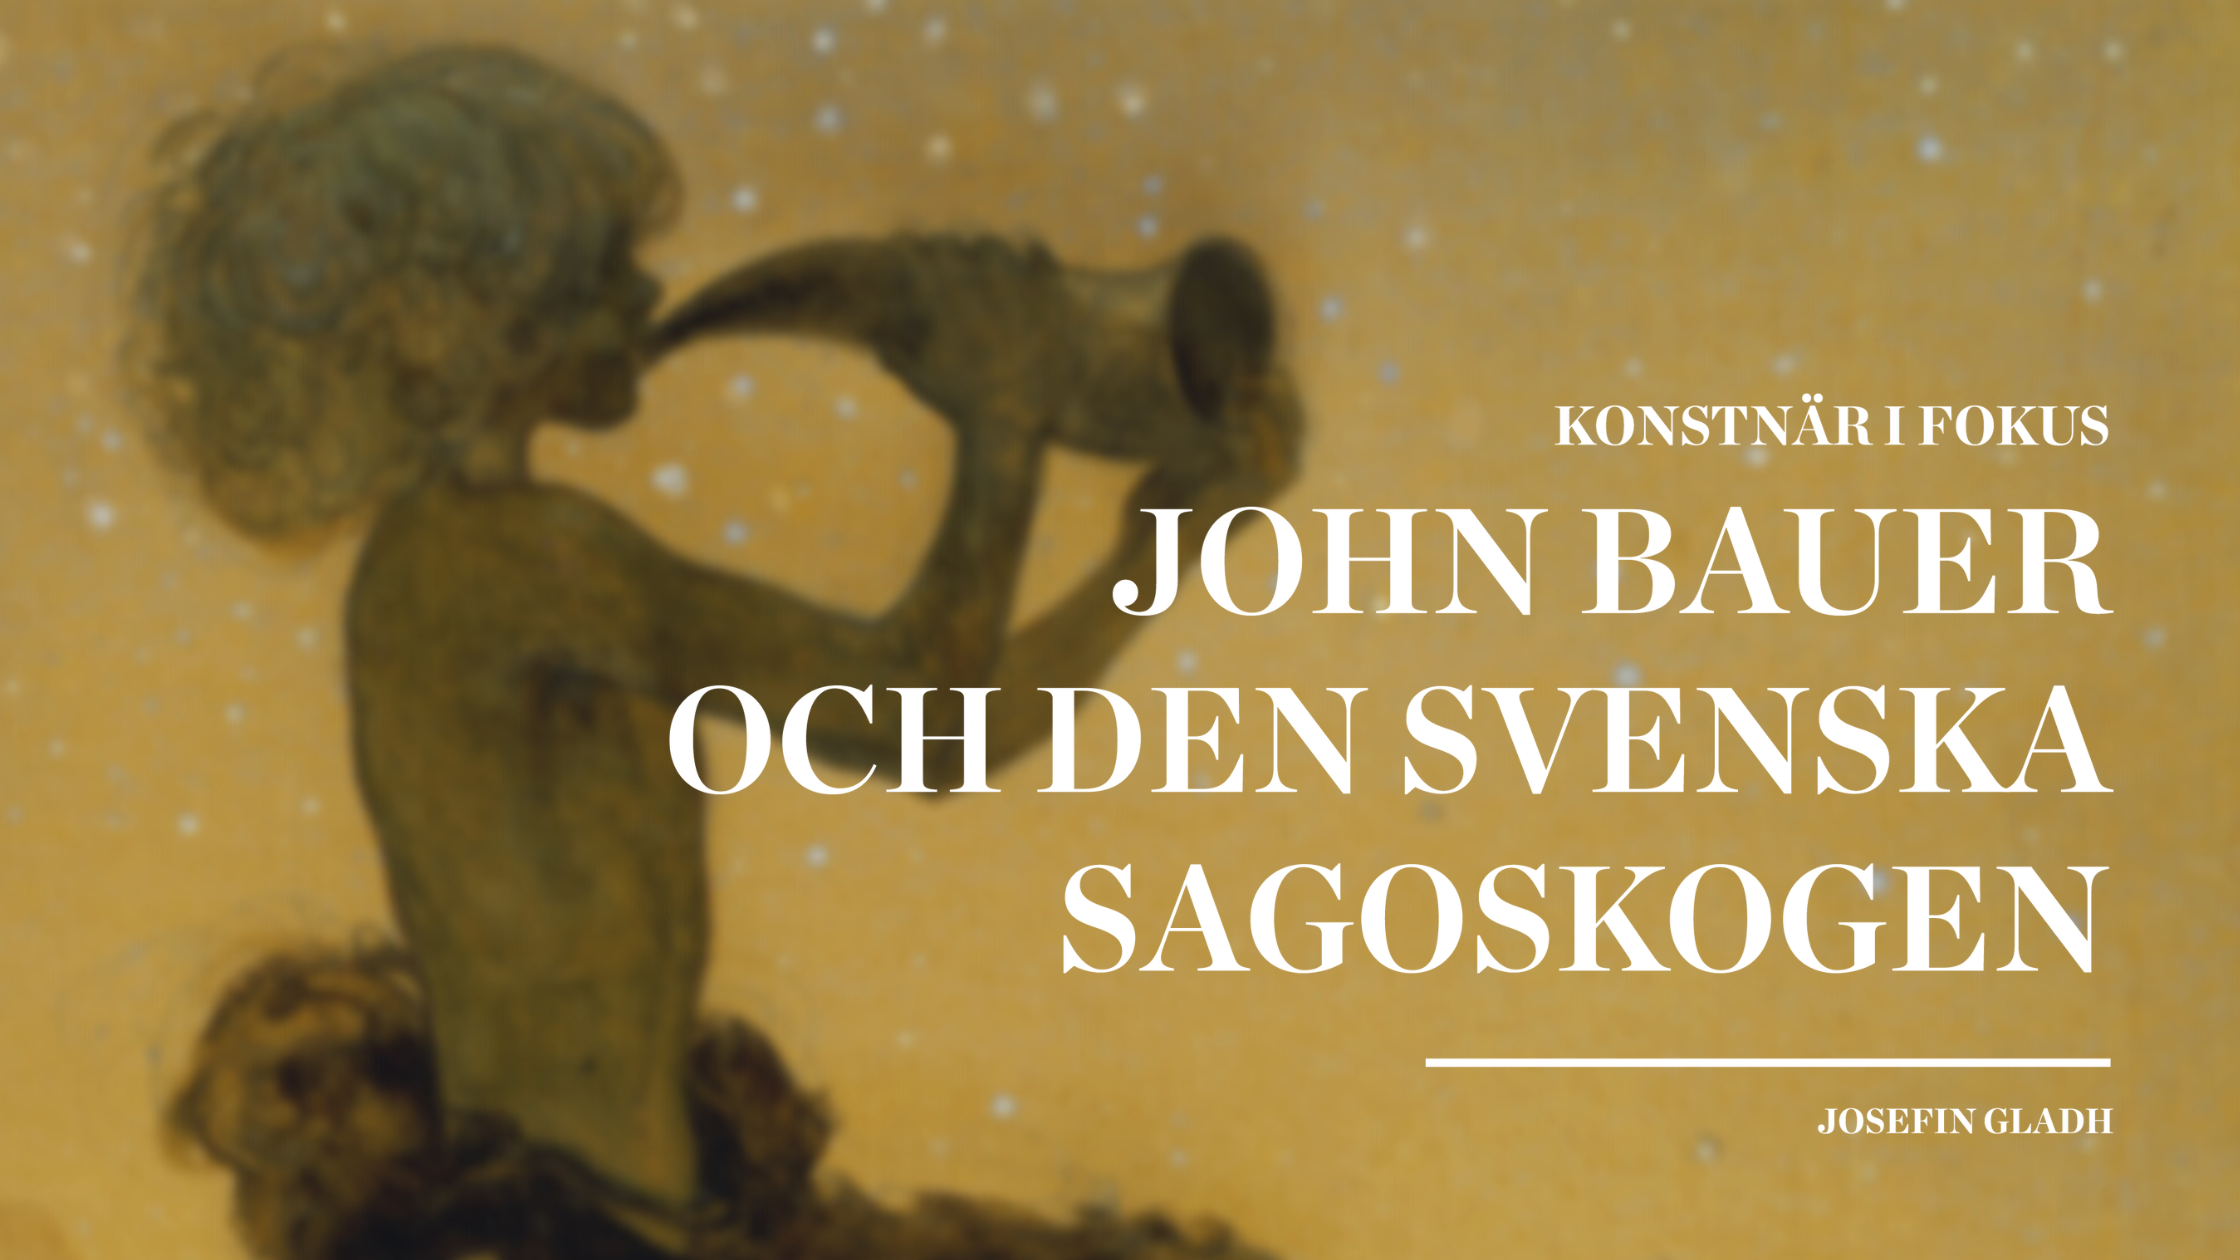 John Bauer och den svenska sagoskogen av Josefin Gladh